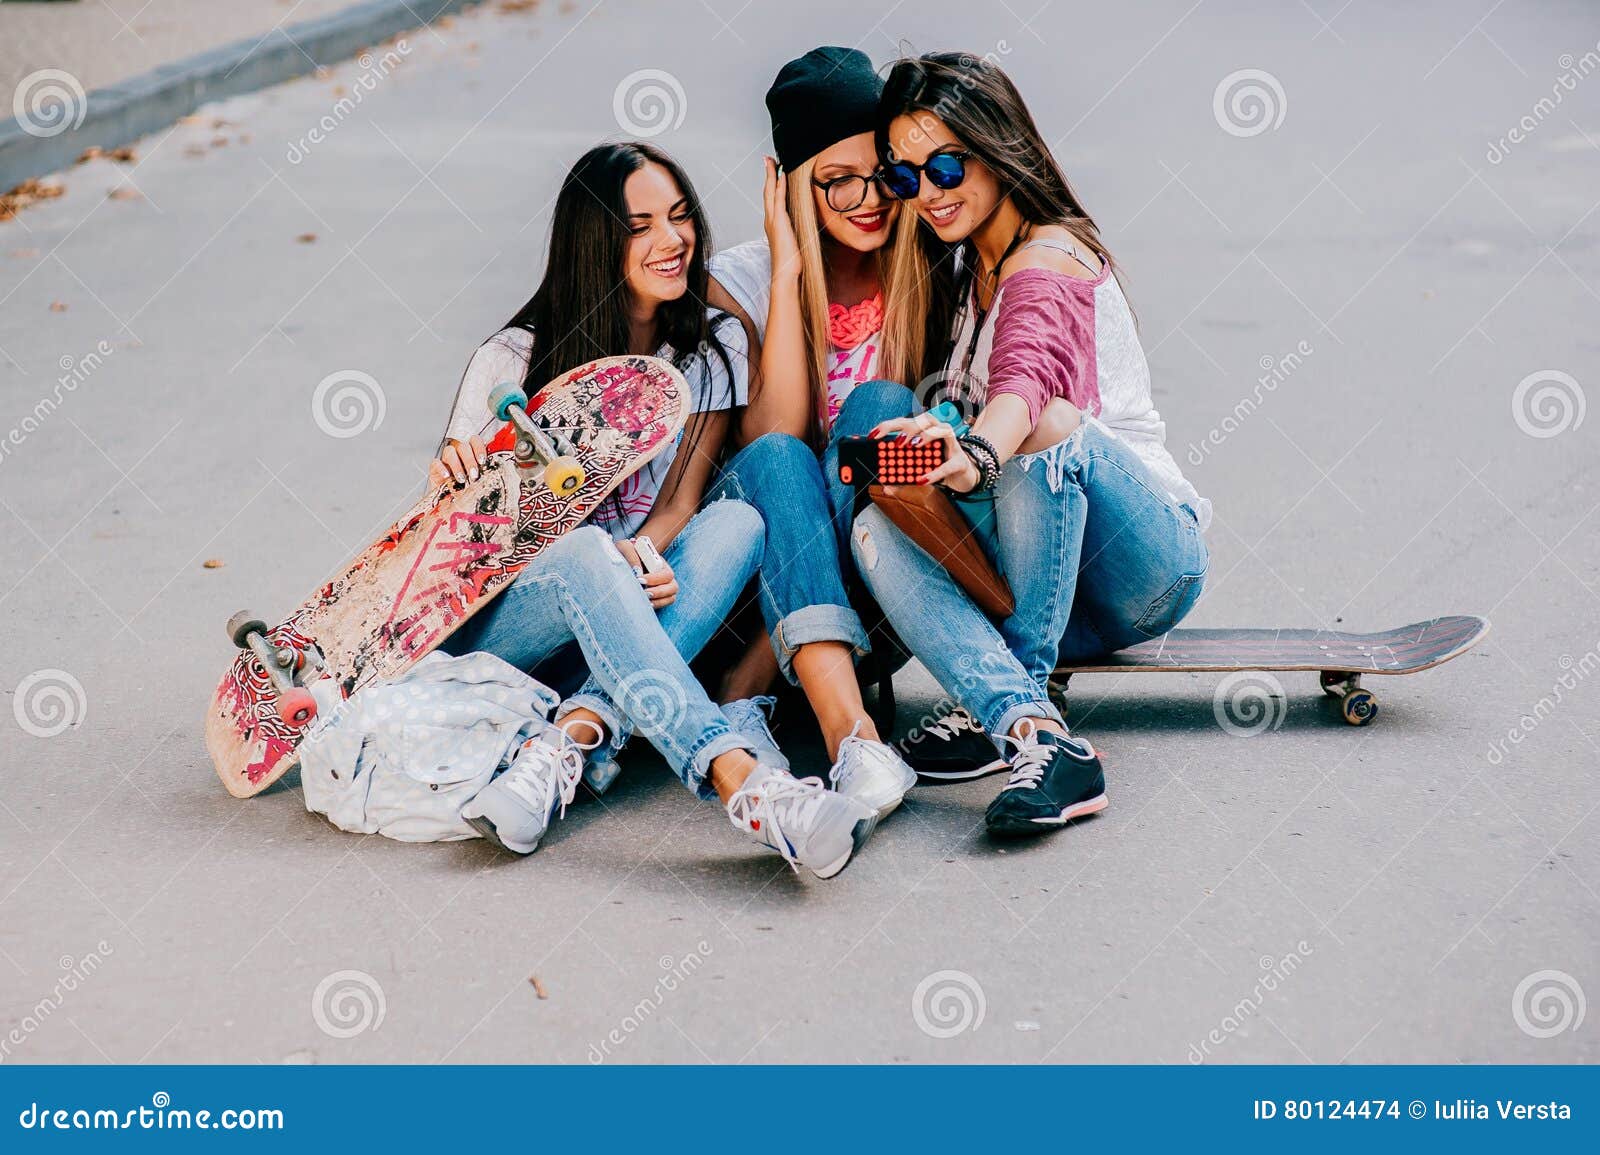 Жить с тремя девушками. Фото на обои для девочек 3 подруги современную. Подруги 3 сидят дома играются. Сценка для 3 подруг лëгкая. Девушки 3 подружки посередине брюнетка с короткой стрижкой.